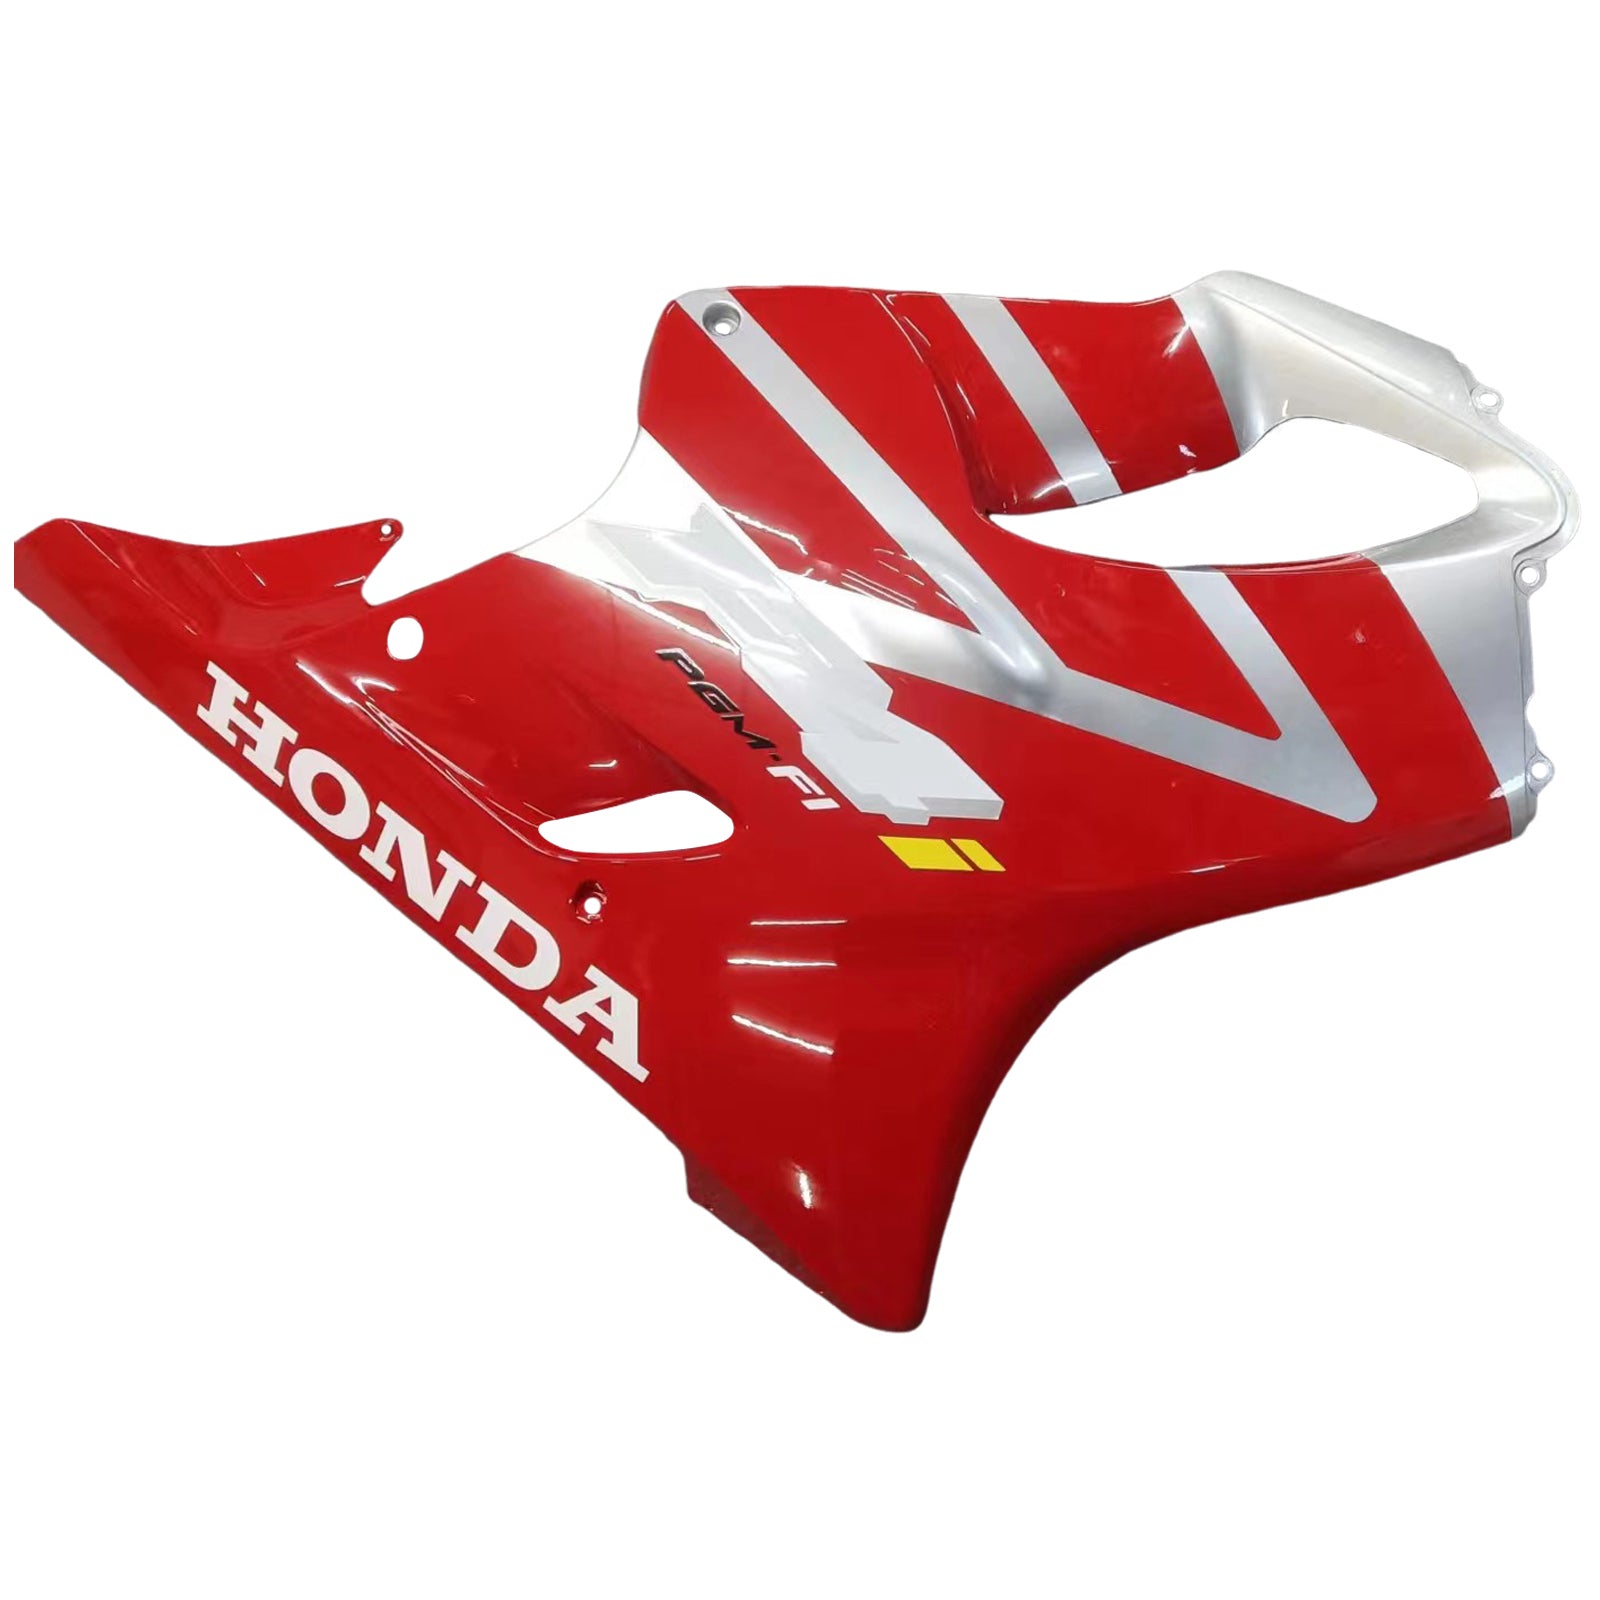 Amotopart 2004-2007 Kit carena Honda CBR600 F4i rosso e argento